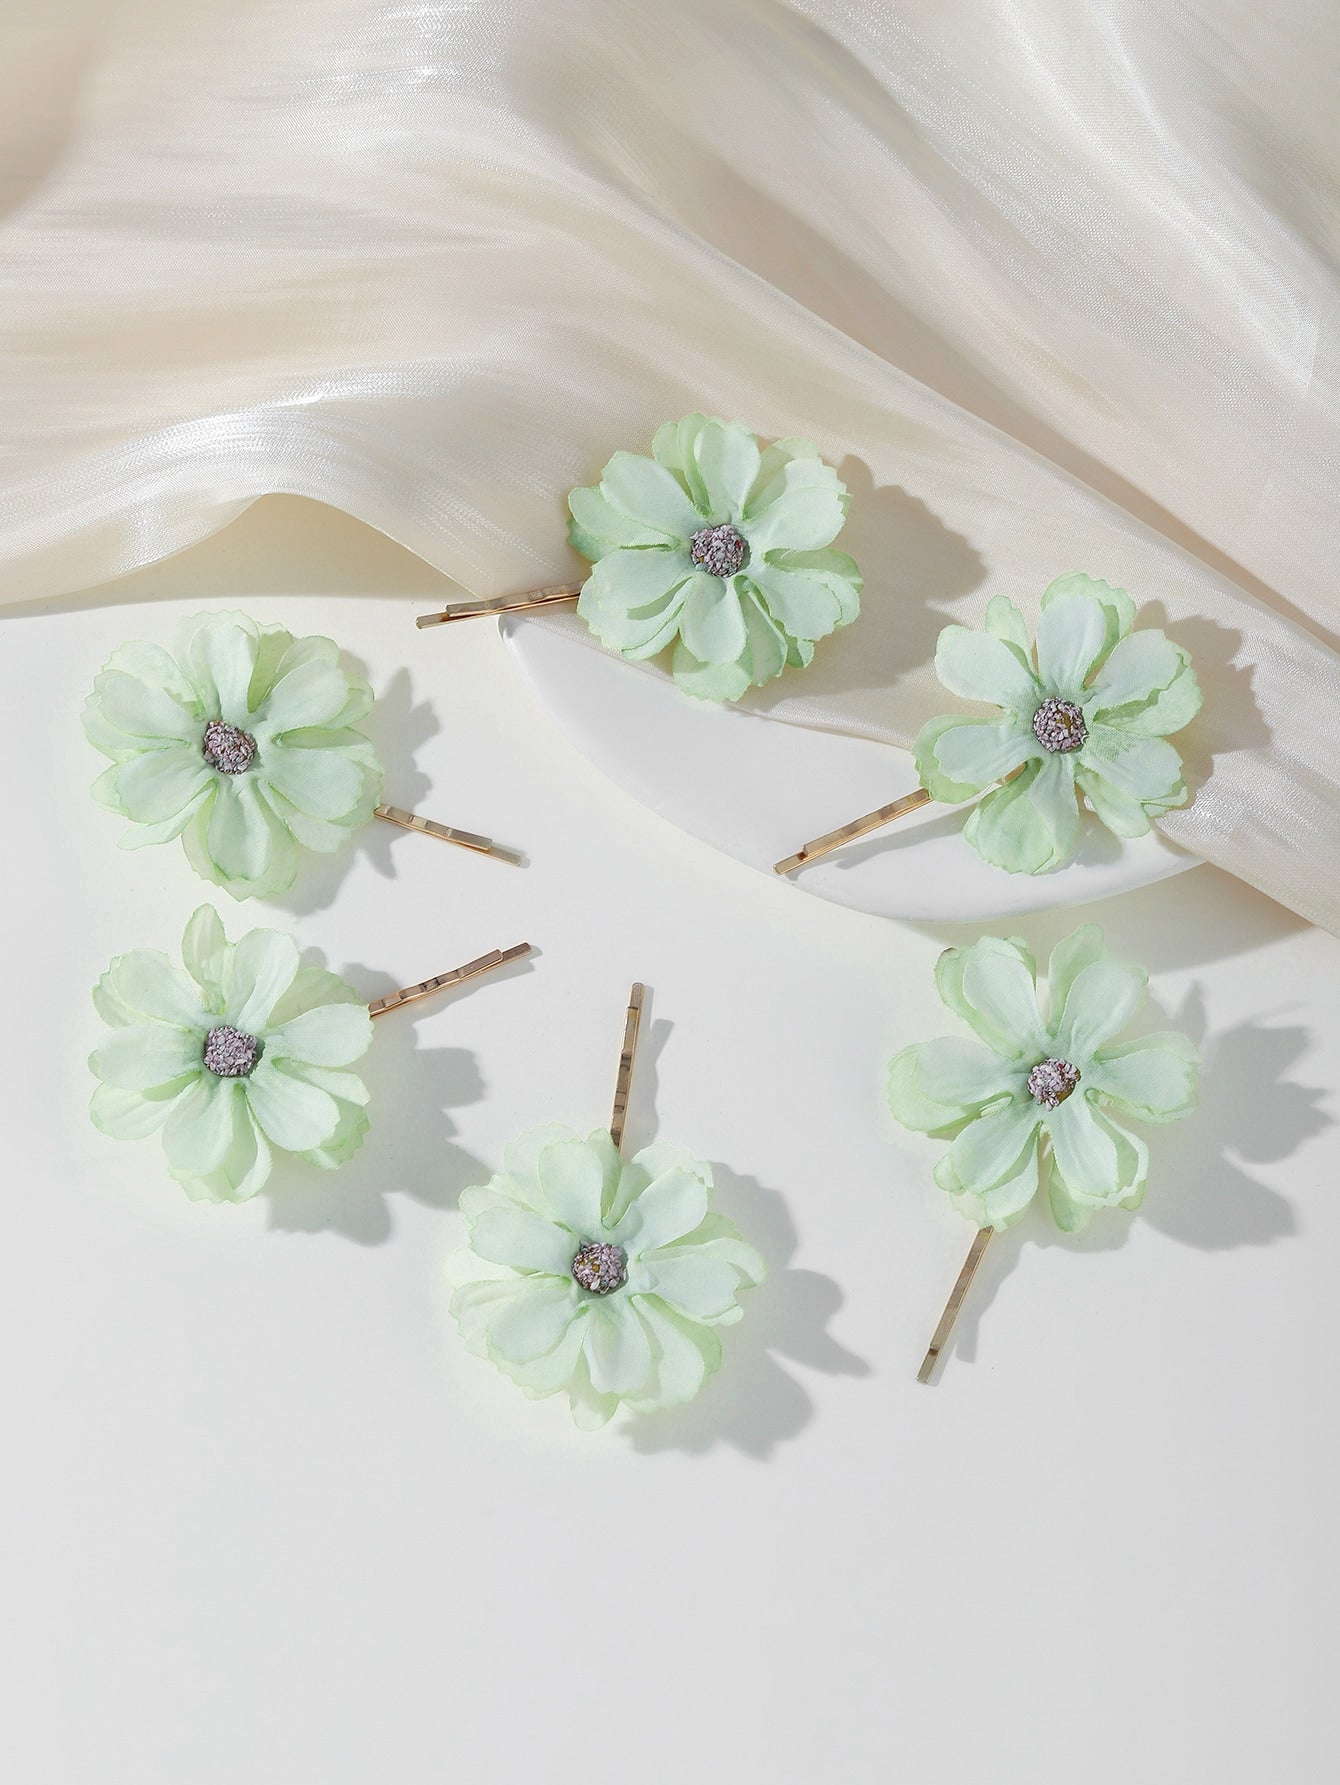 Fairycore 6pcs Flower Pins